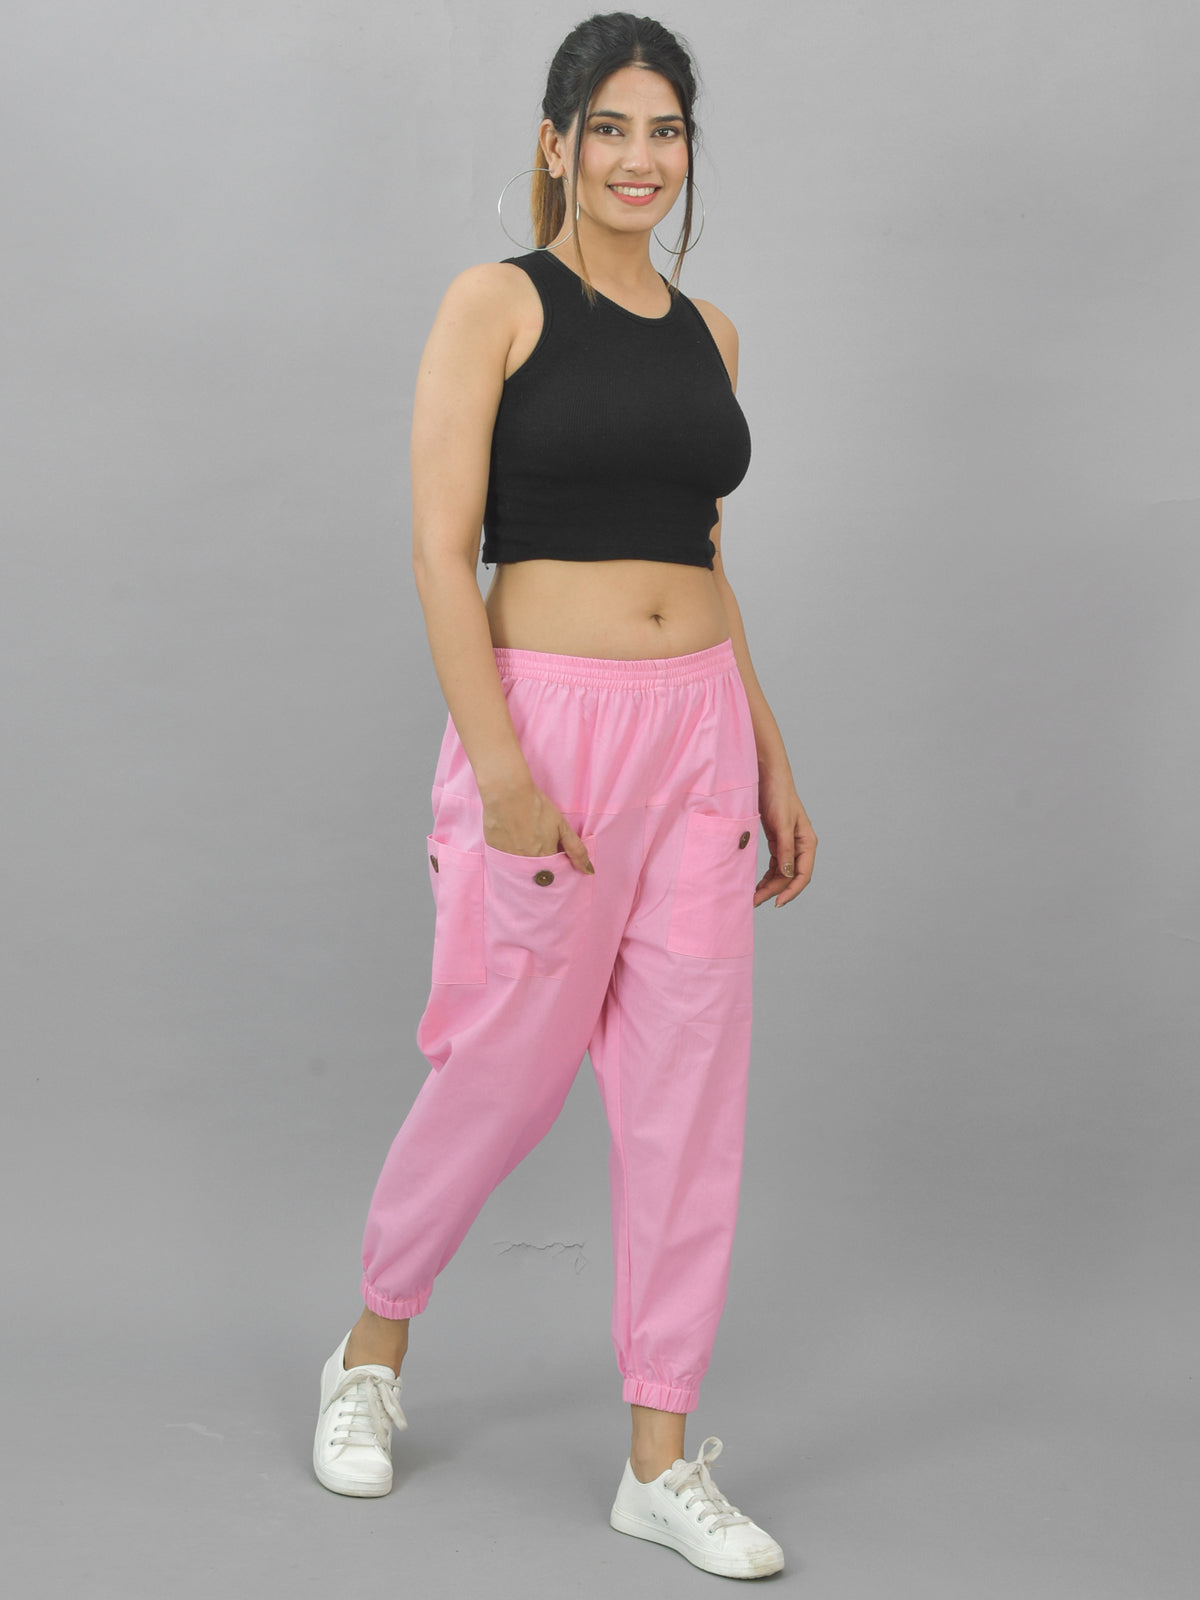 Quaclo Women's Pink Four Pocket Cotton Cargo Pants